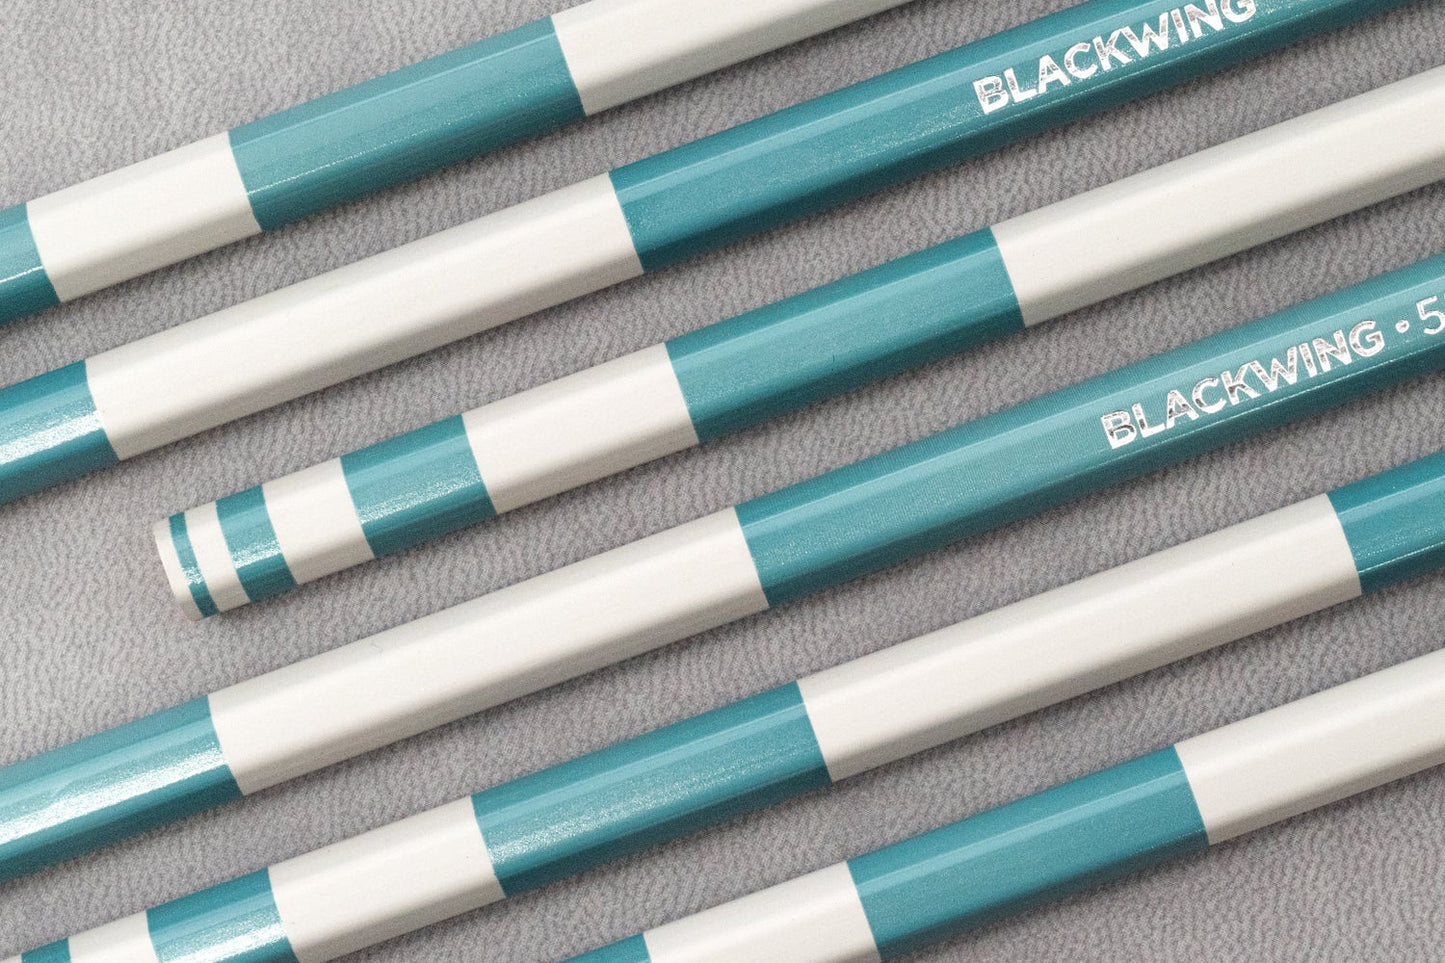 Blackwing Pencils - Volume 55 | Flywheel | Stationery | Tasmania